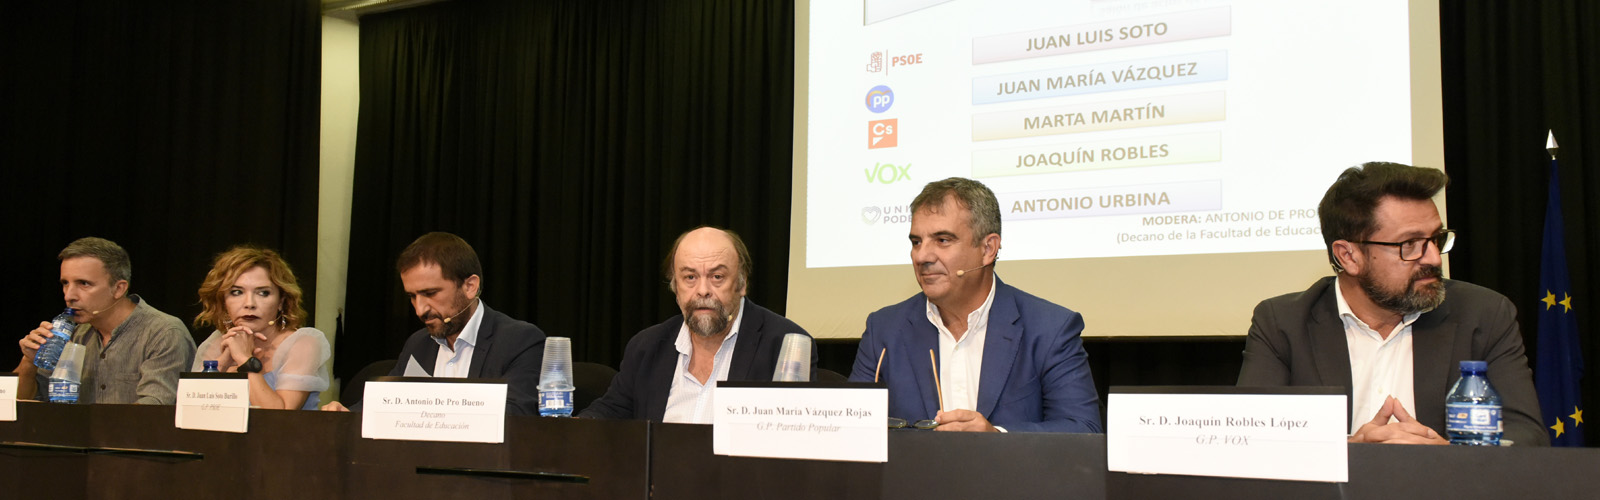 'La educación a debate' en la Universidad de Murcia